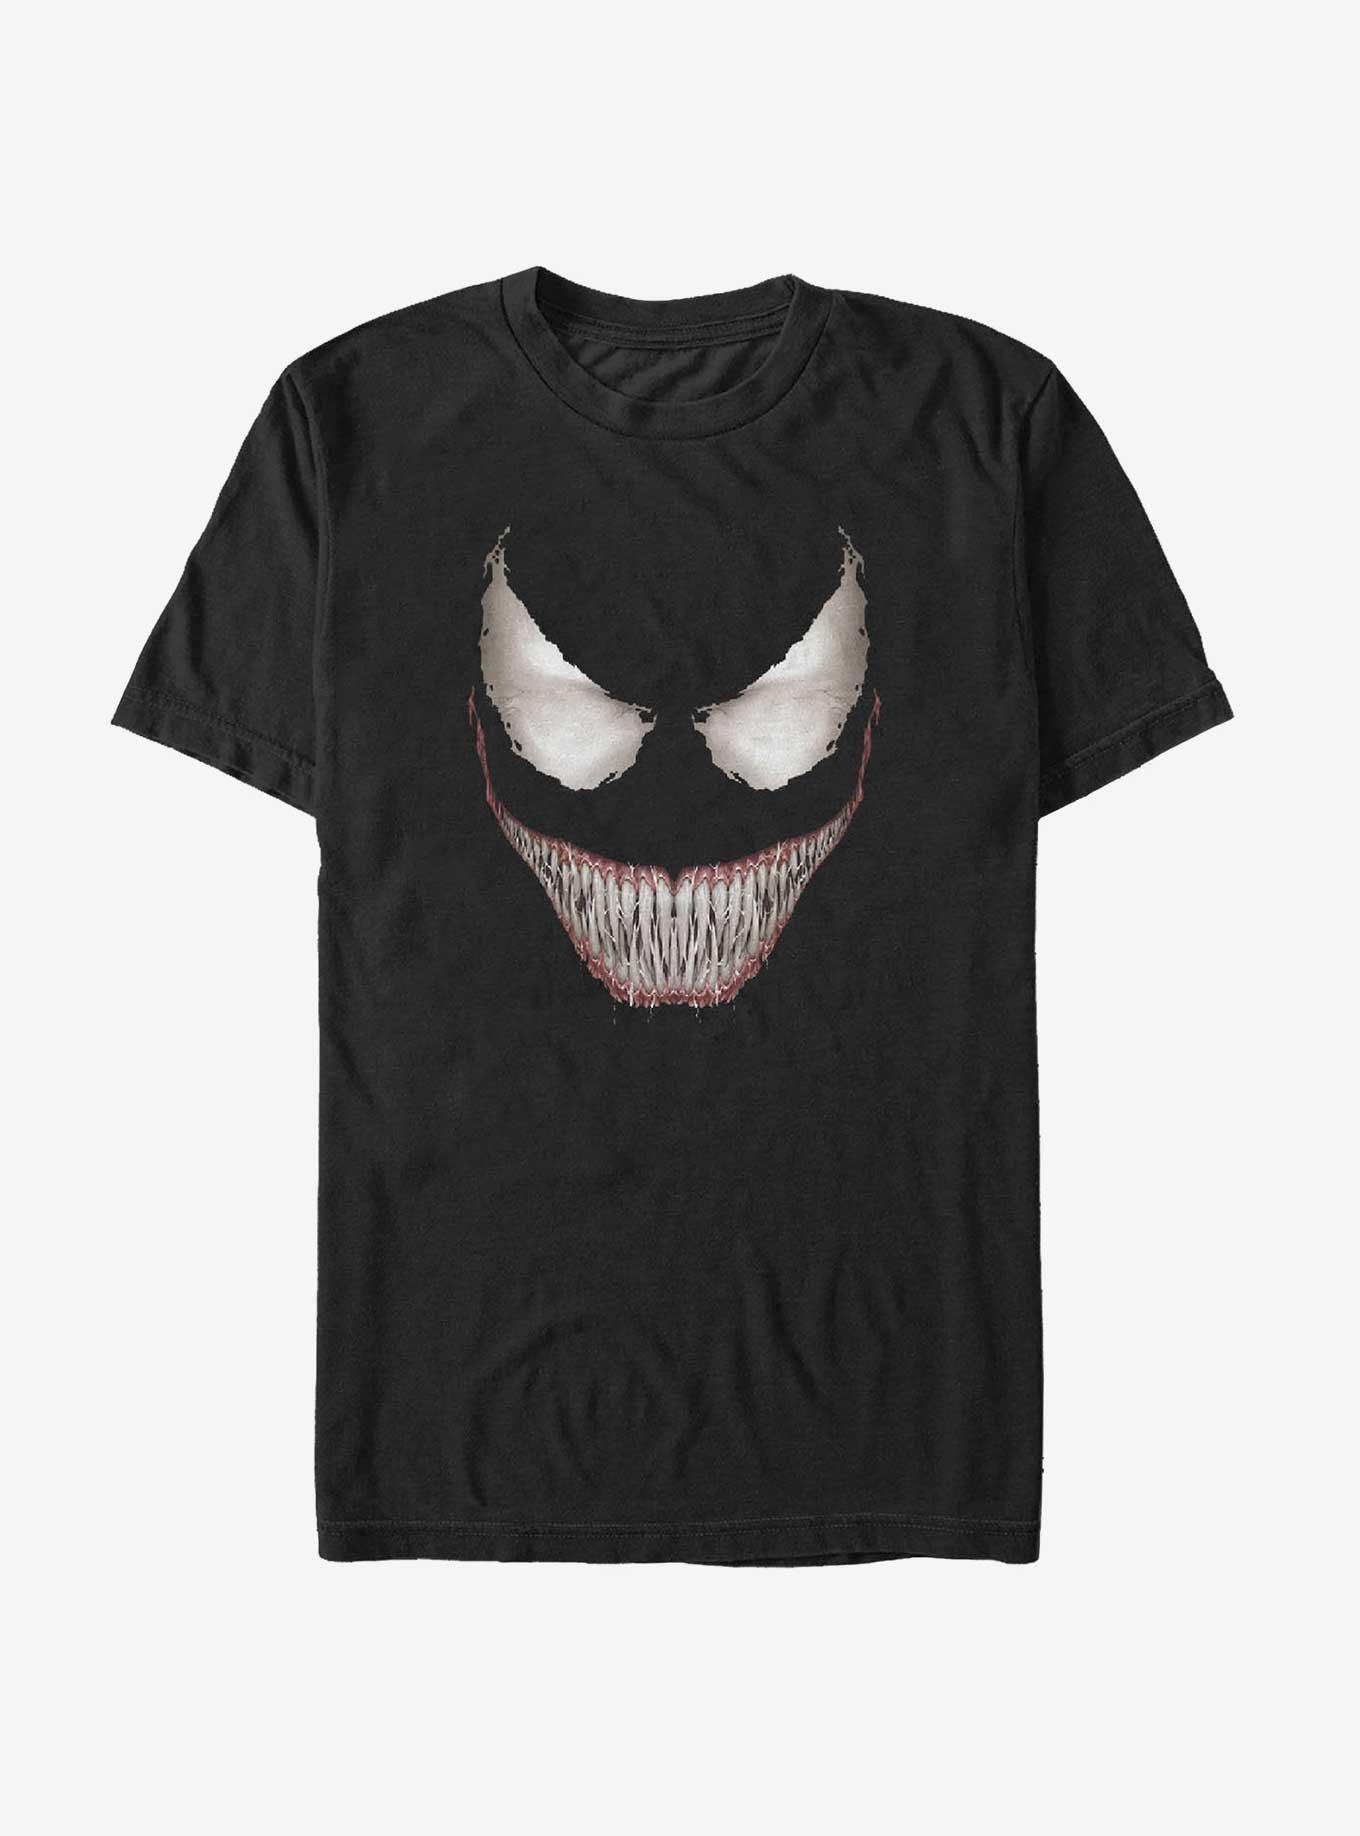 Marvel Venom Malicious Smile Big & Tall T-Shirt, BLACK, hi-res